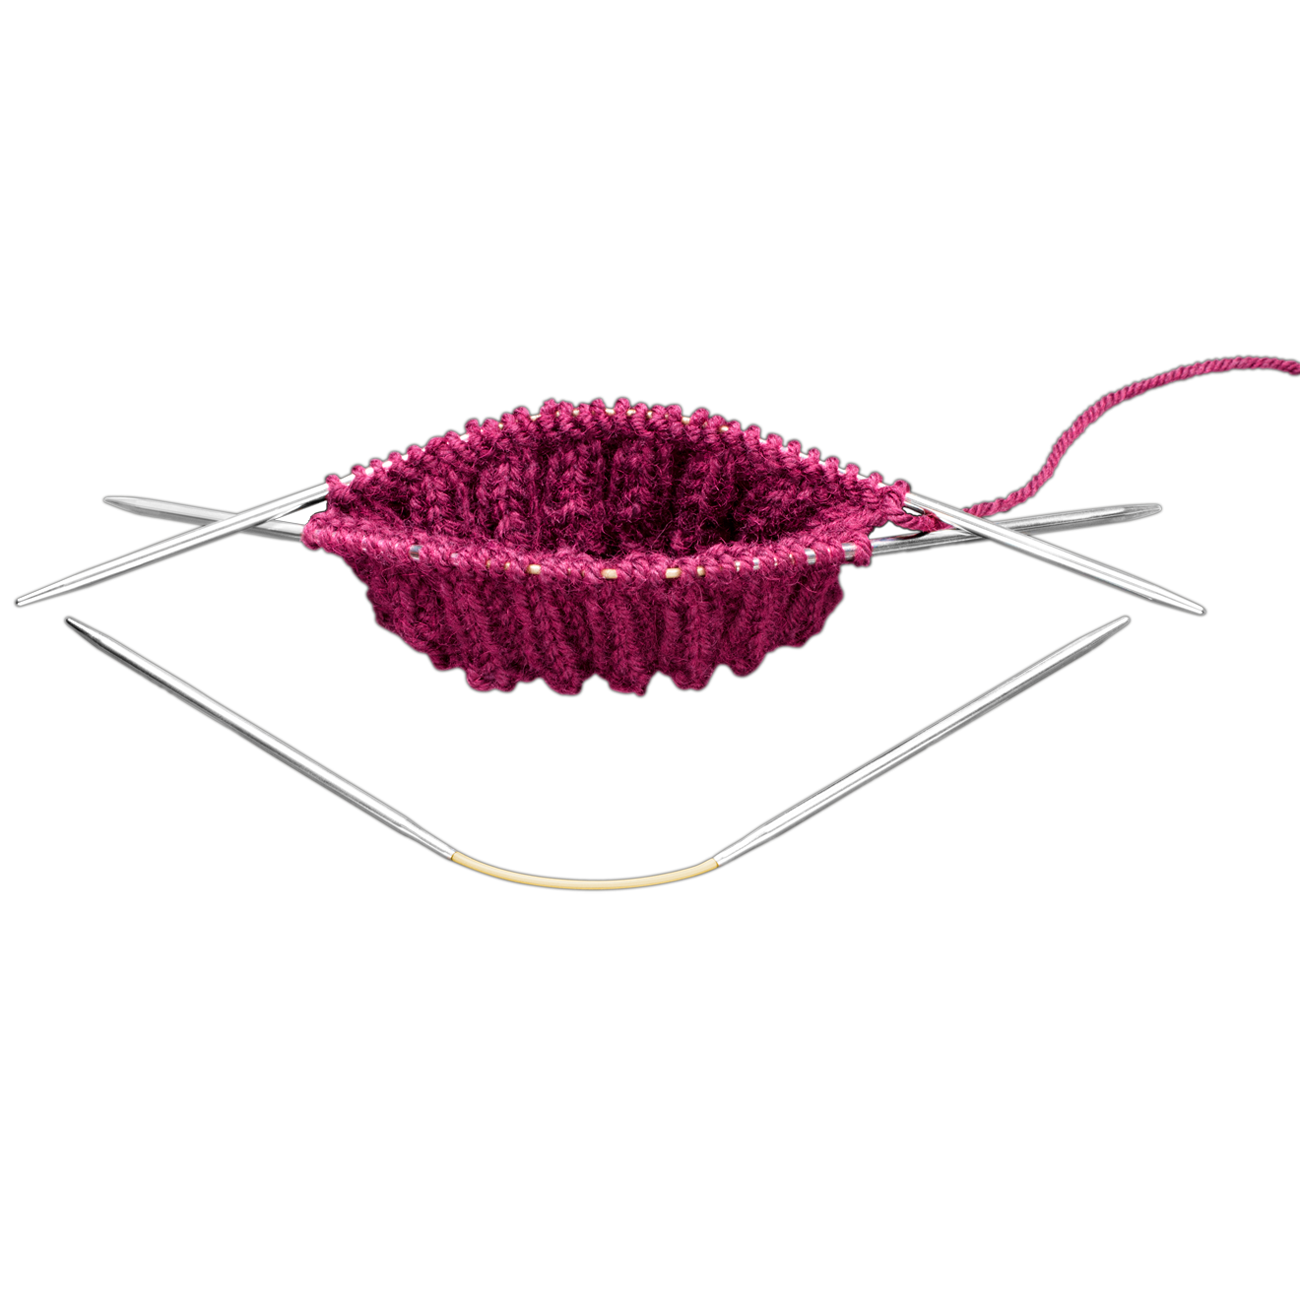 Addi Crasy Trio Long flexible circular knitting needle